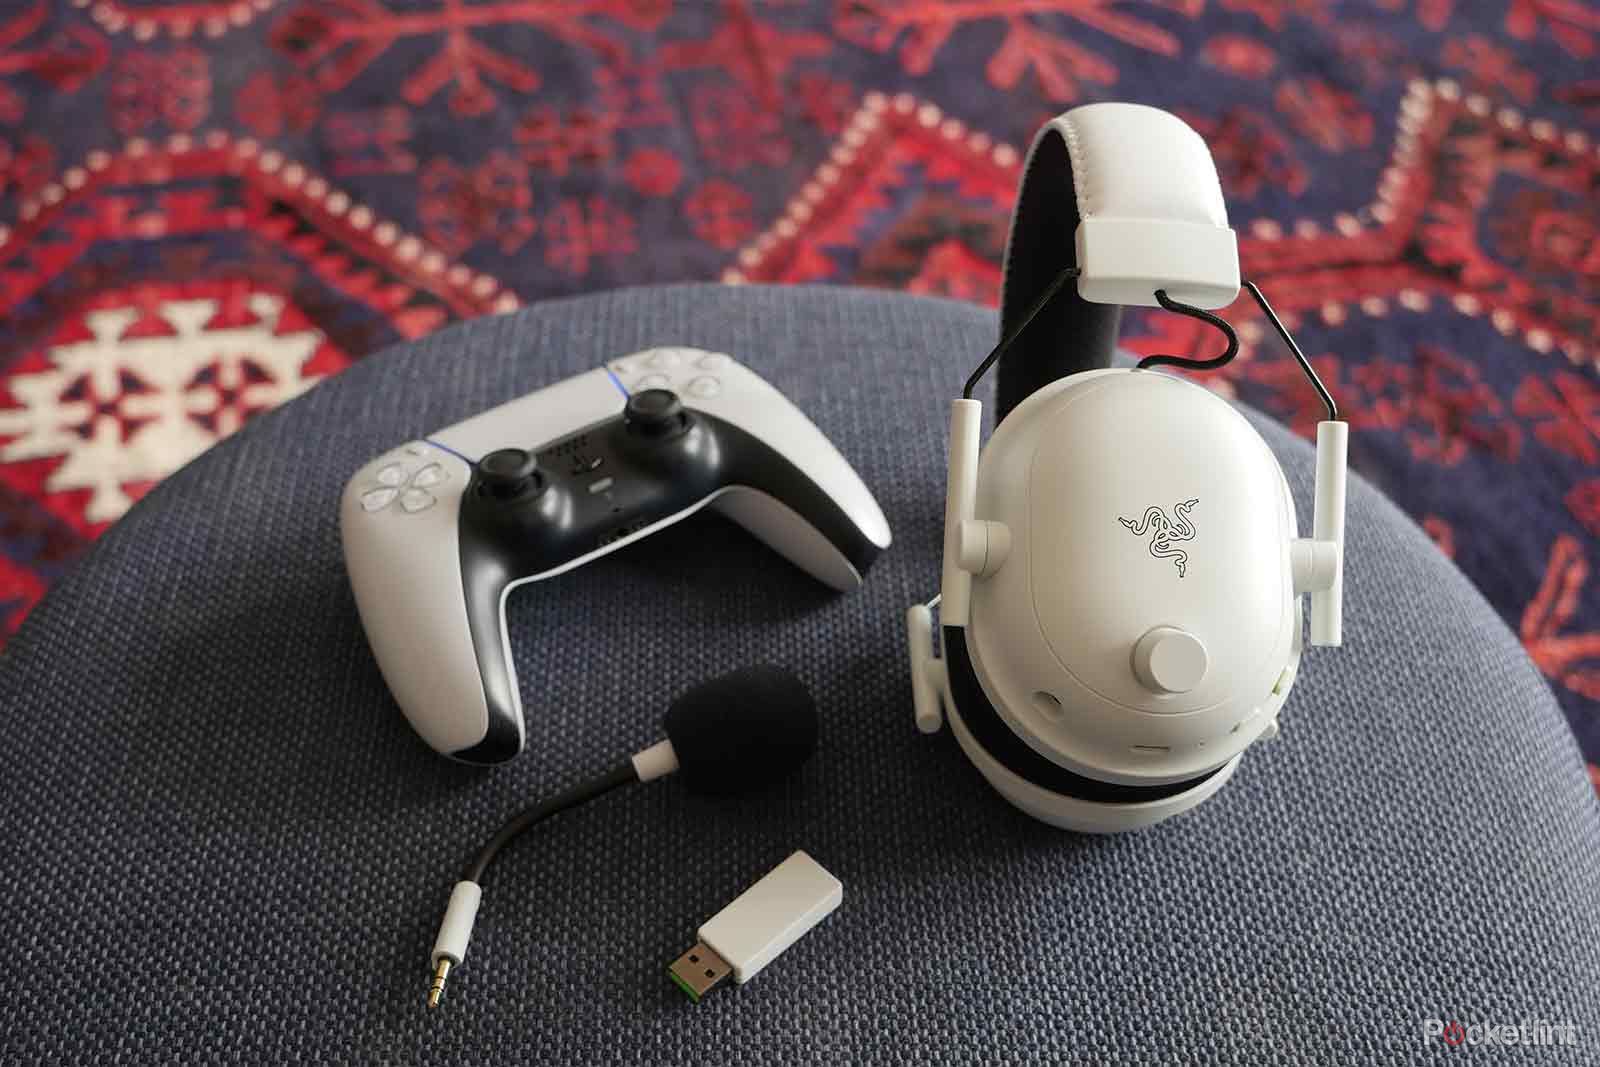 razer-blackshark-v2-pro-headset-review:-white-and-light